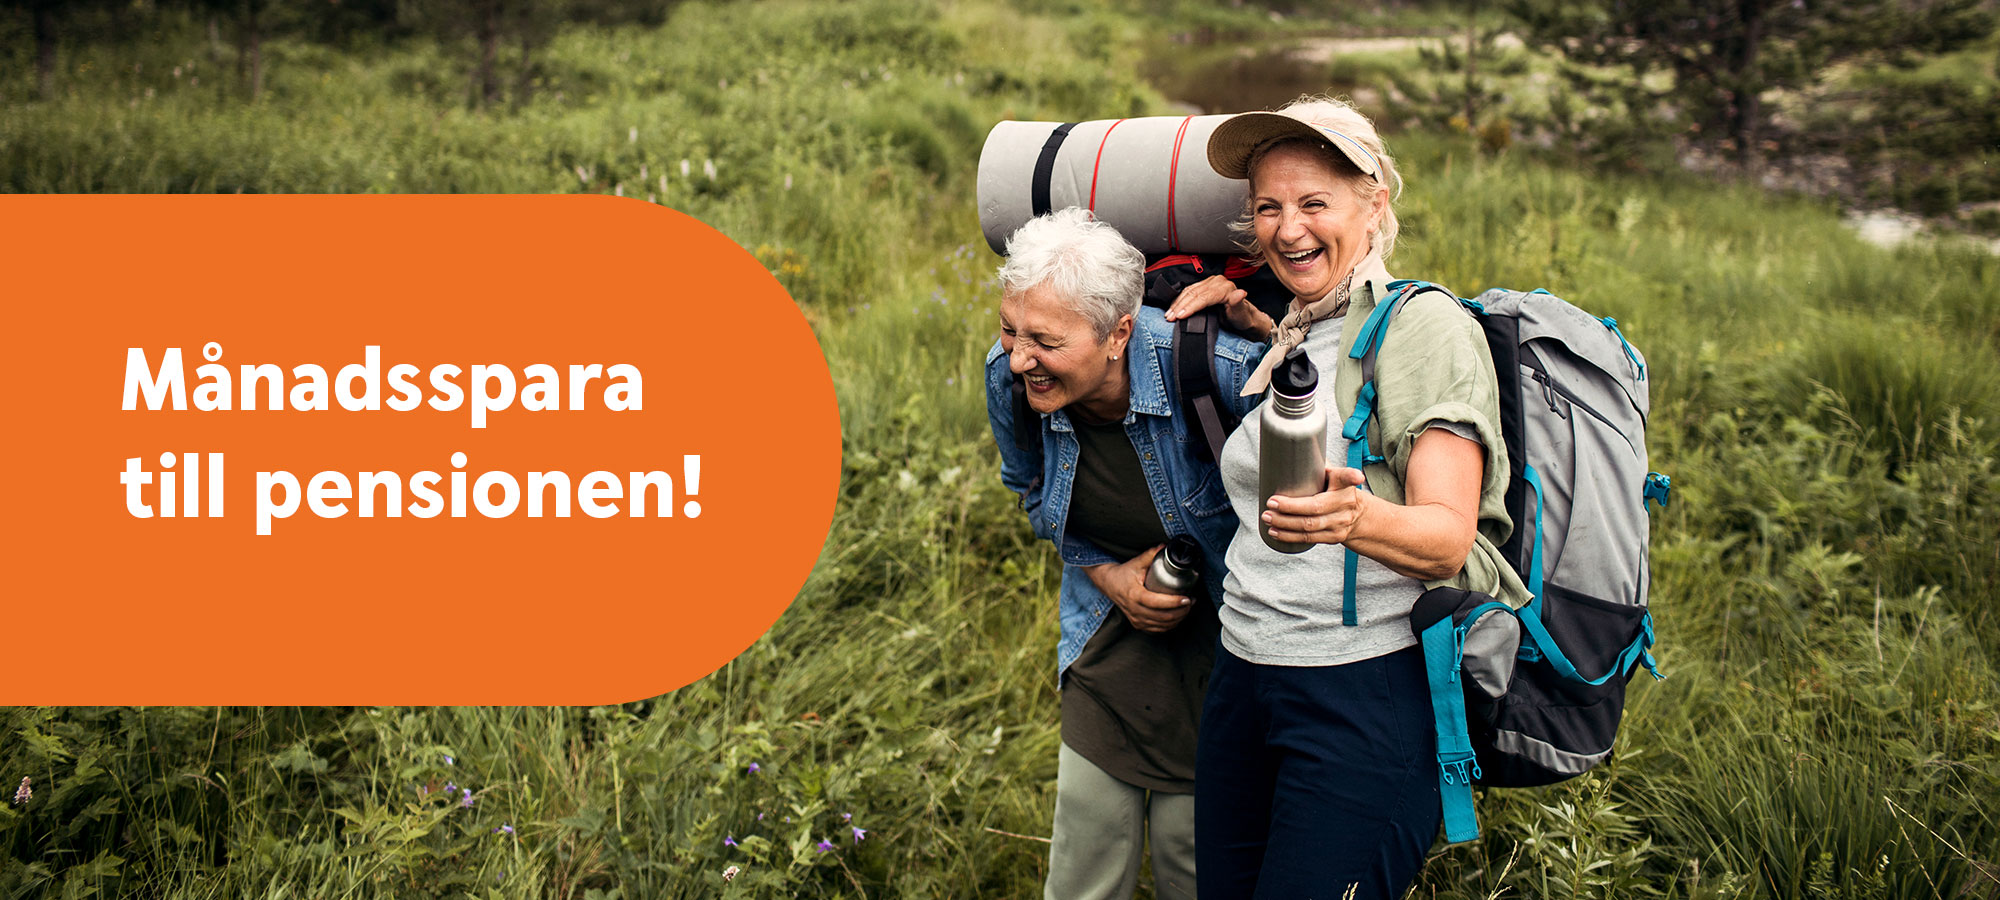 Två äldre kvinnor med vandringsutrustning skrattar tillsammans